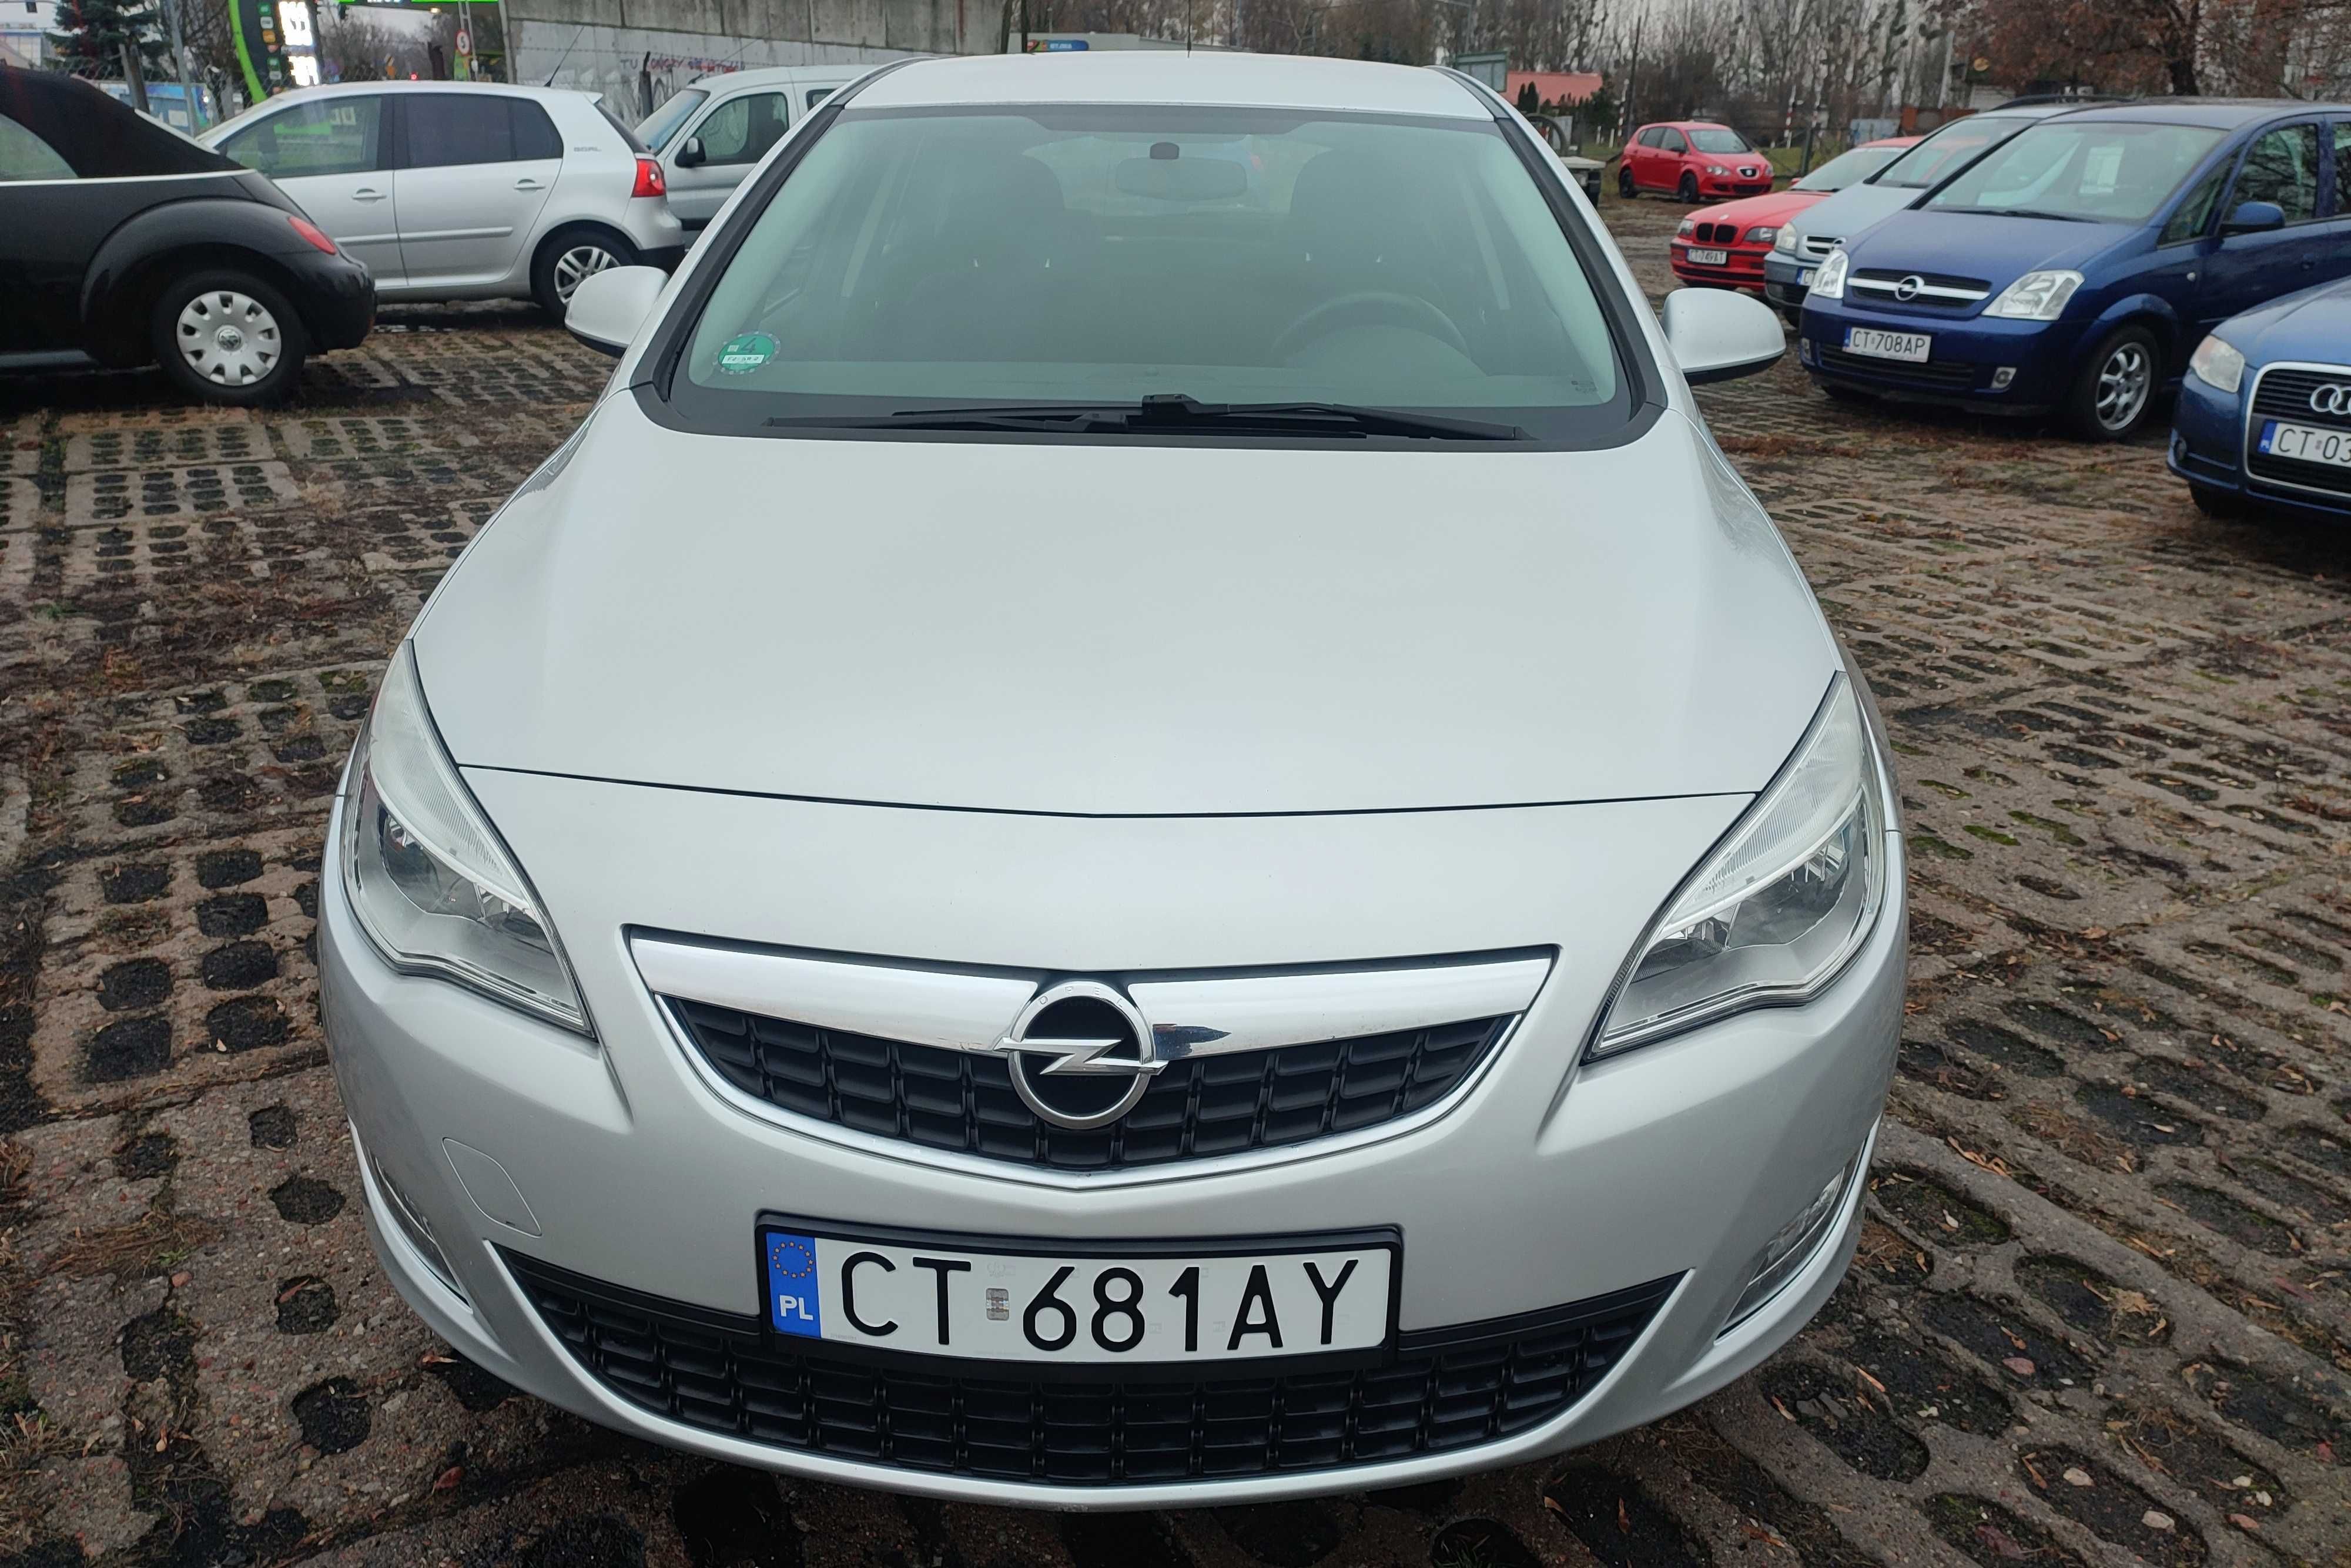 Opel ASTRA IV 4 J 2010 rok 1,6 benzyna 116 kM 5 drzwi KLIMA zarejestro